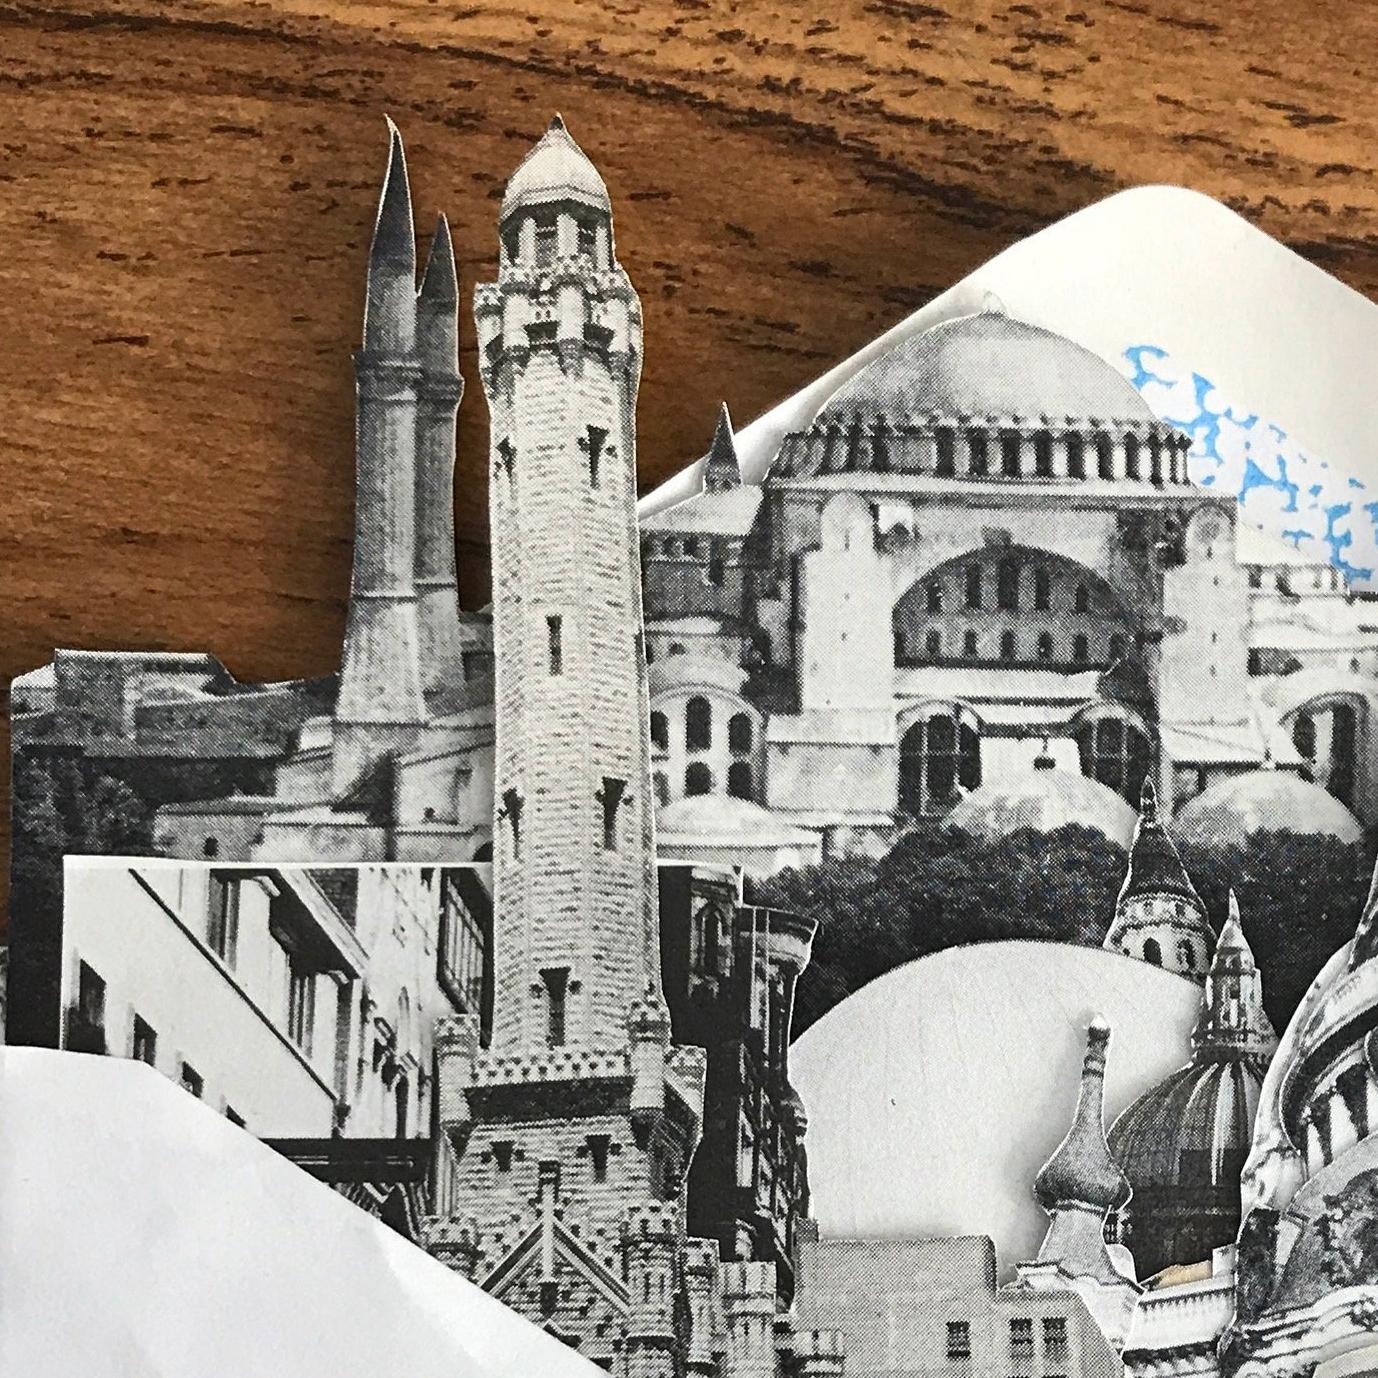 Analoge Collage

6,5 x 7 Zoll
Collage auf Papier
Geschichte der Ausstellung: DIE COLLAGE-AUSSTELLUNG

Morgan Jesse Lappin ist ein in Brooklyn ansässiger Collagenkünstler und Kurator. Er möchte die Grenzen der Collage ausloten, Künstler ausfindig